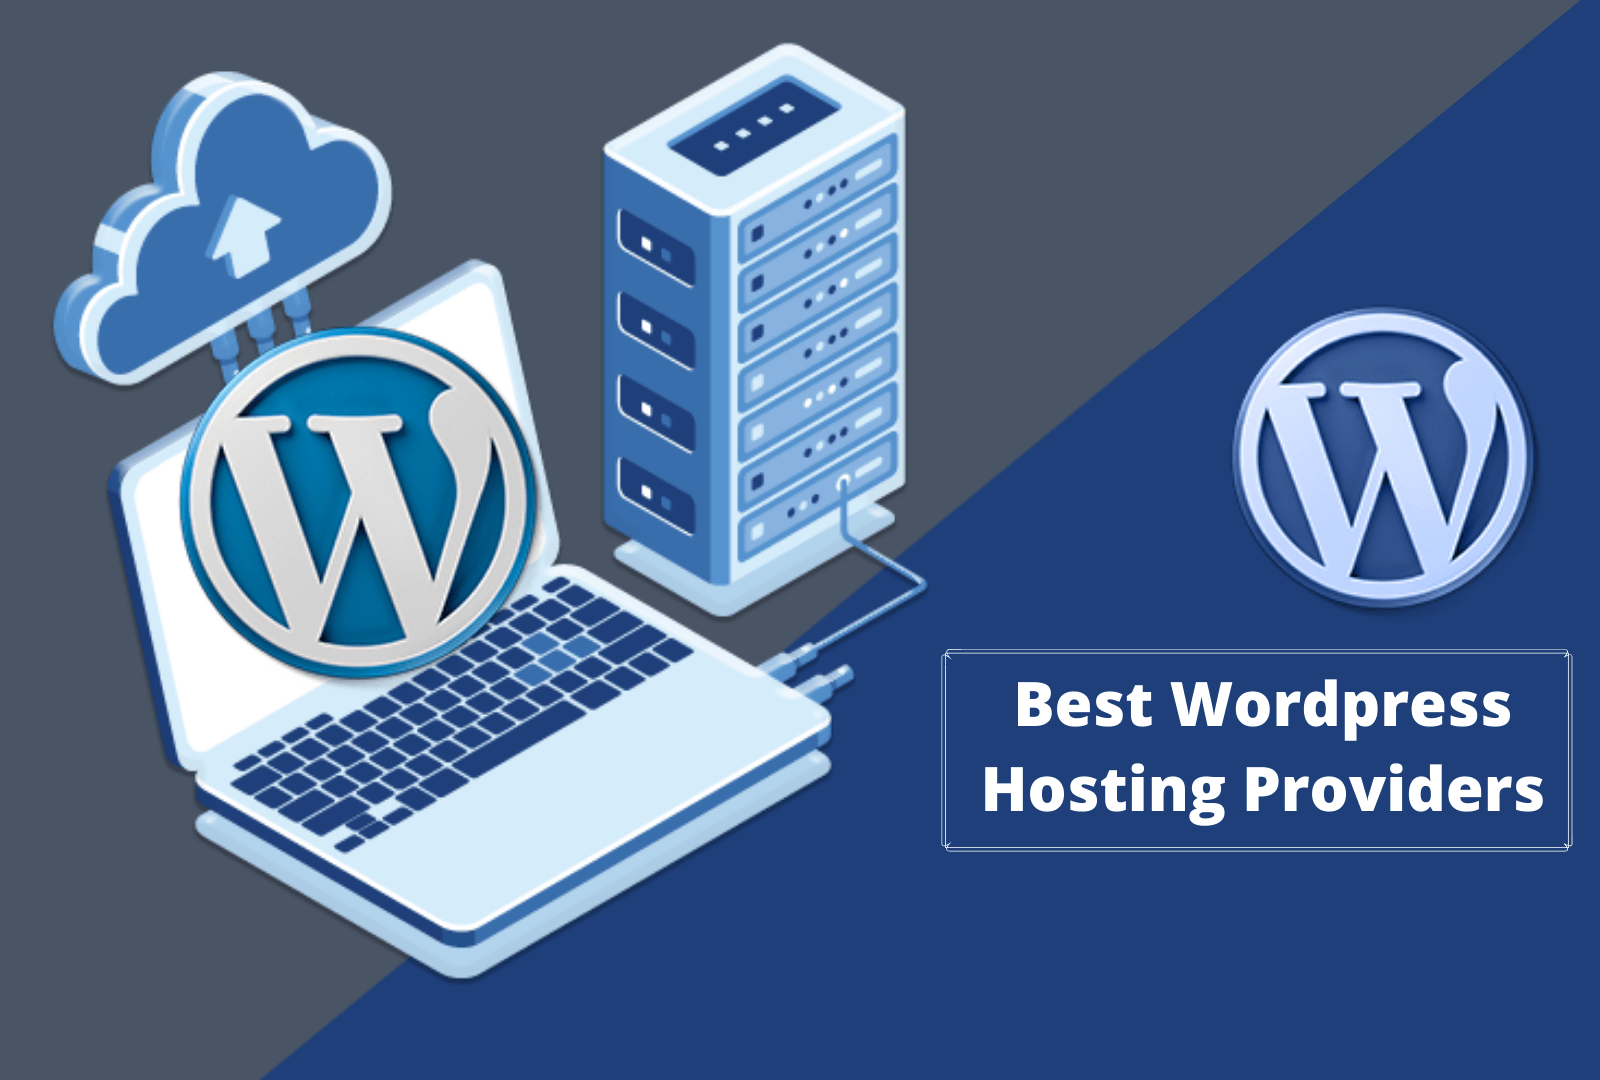 Mua Hosting WordPress - Bảng giá, ưu nhược điểm và cách lựa chọn tốt nhất